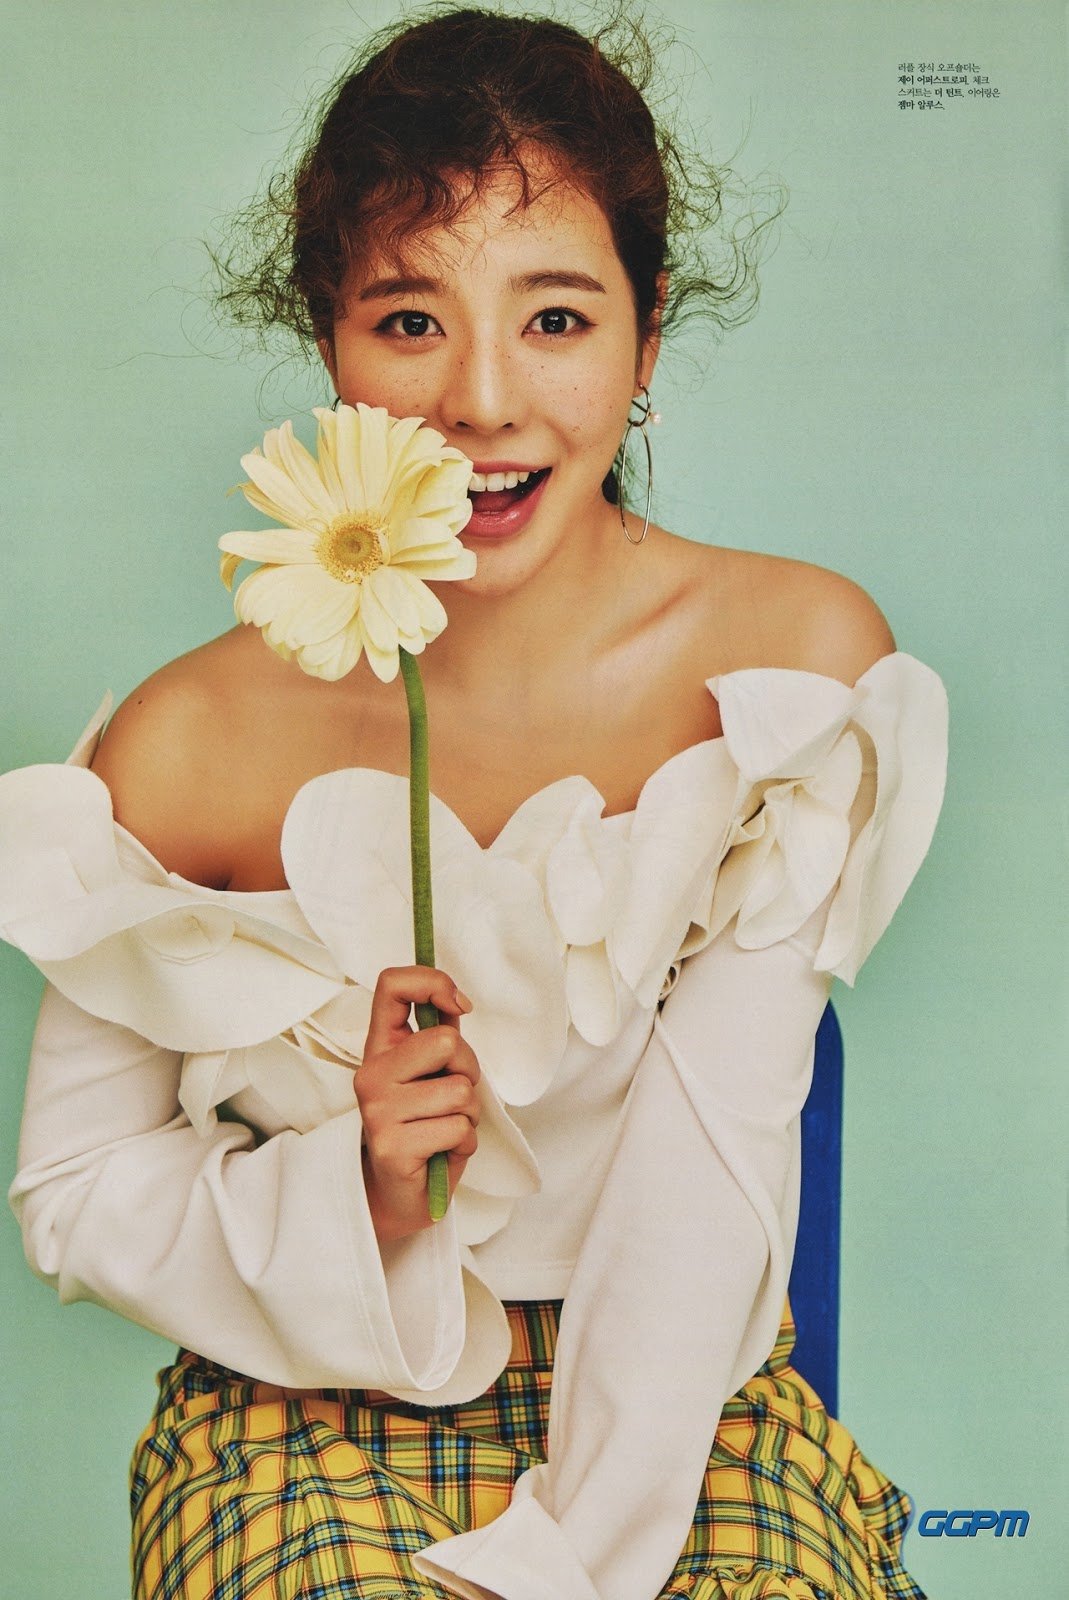 [PIC][21-02-2017]Sunny xuất hiện trên trang bìa tháng 3 của tạp chí "THE STAR" OagVuGg5of-3000x3000